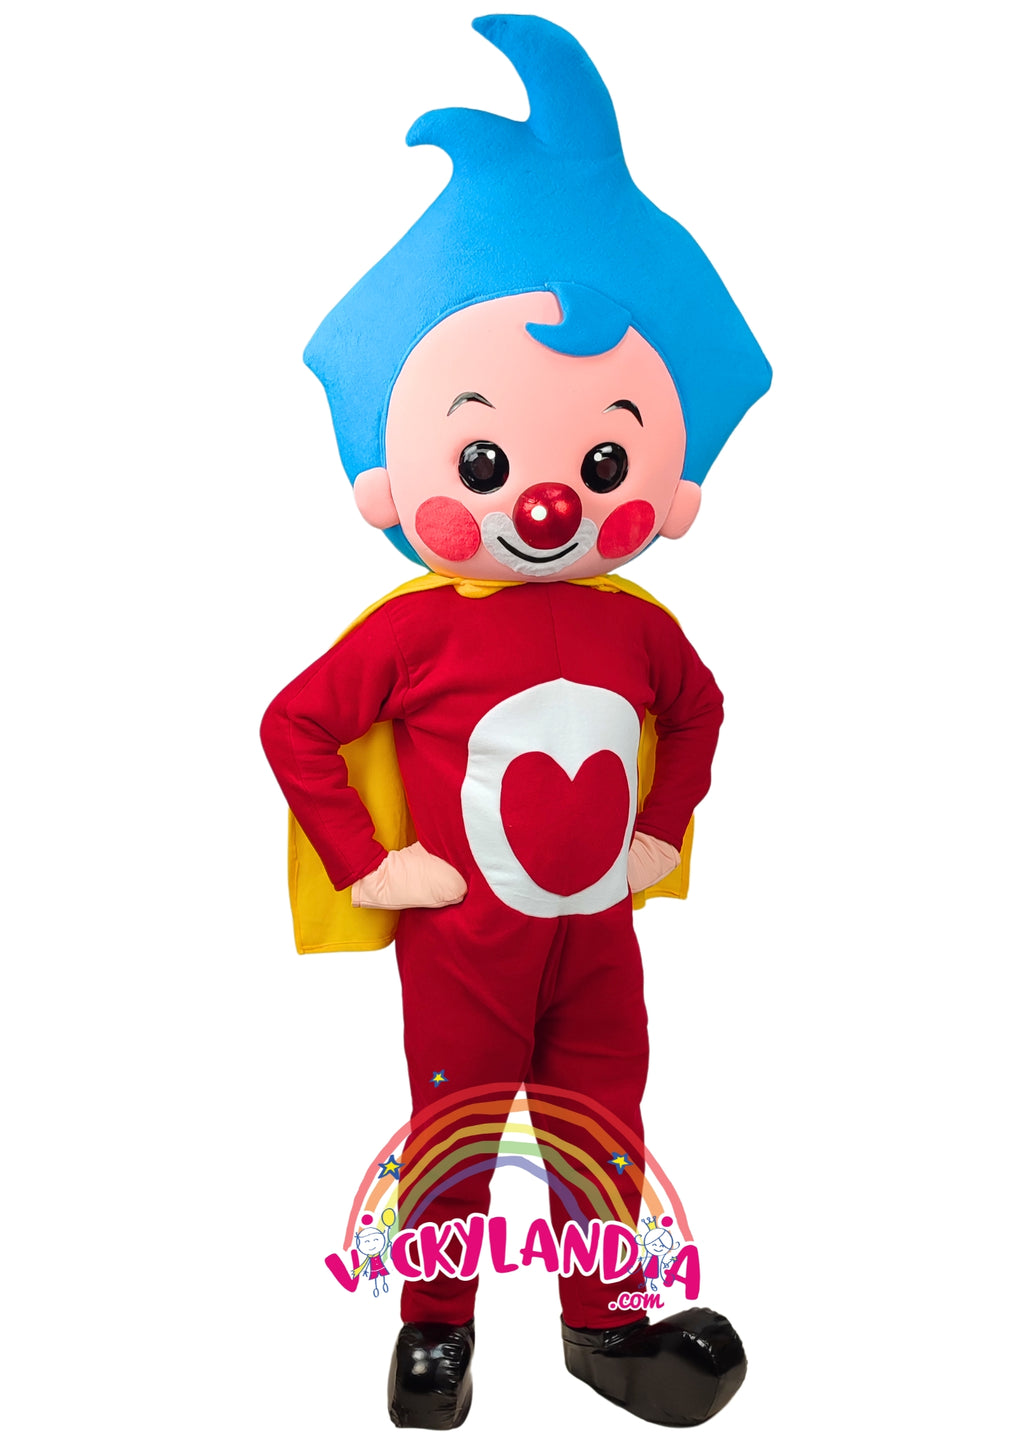 Descubre la magia de nuestro muñeco publicitario de Niño Payaso Héroe en Vickylandia. Son disfraces cabezones perfectos para fiestas infantiles, shows, cumpleaños, estrategias publicitarias, espectáculos, cabalgatas y cualquier tipo de evento.